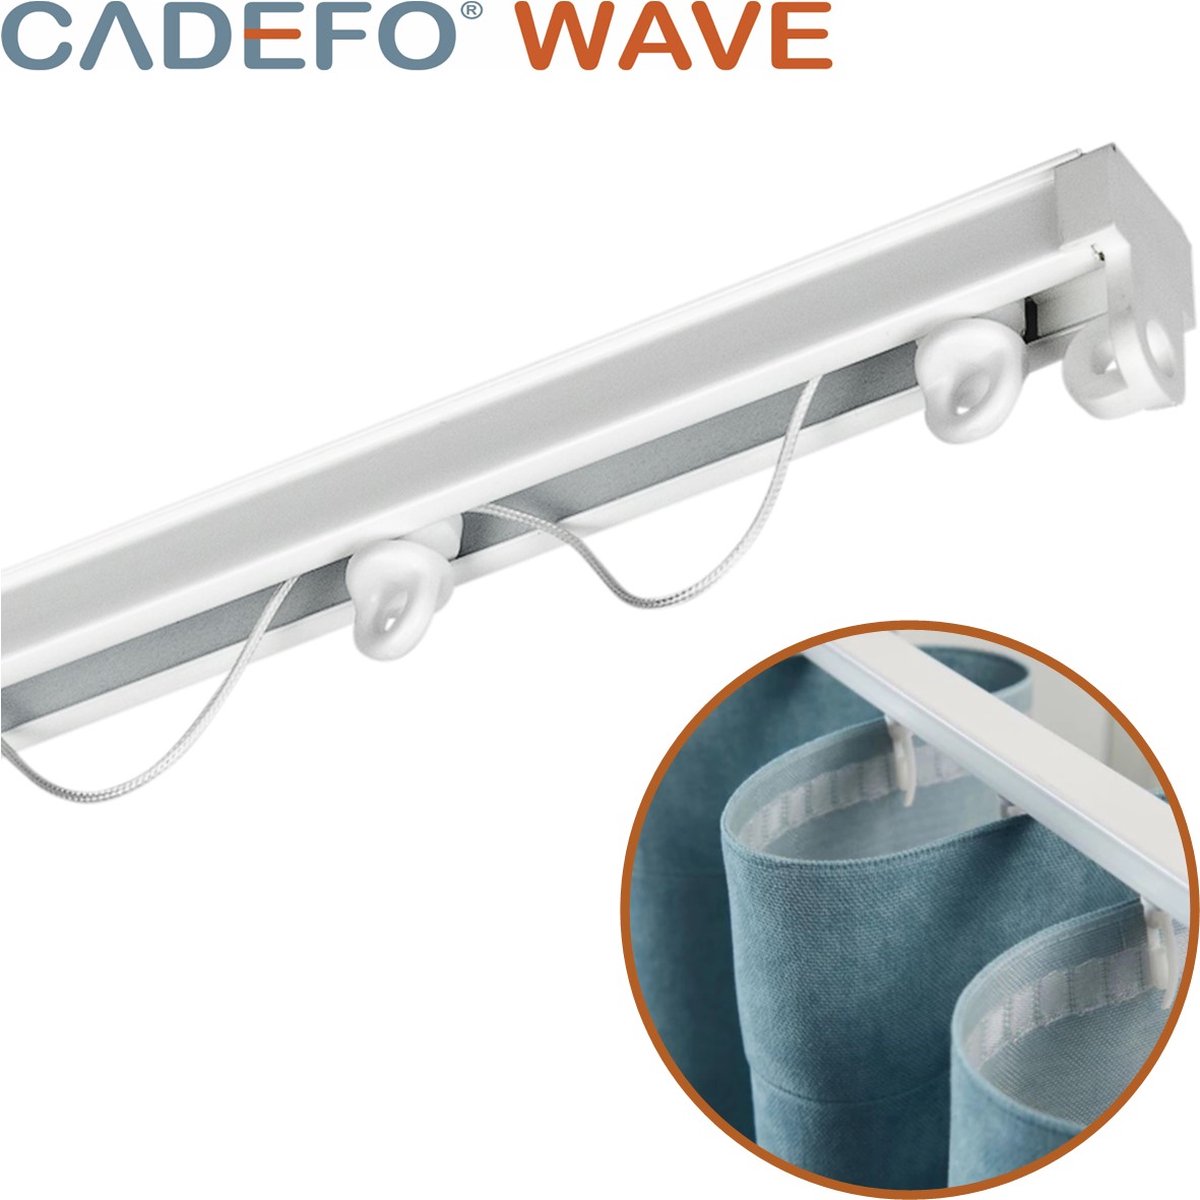 CADEFO WAVE (551 - 600 cm) Gordijnrails - Compleet op maat! - UIT 1 STUK - Leverbaar tot 6 meter - Plafondbevestiging - Lengte 597 cm